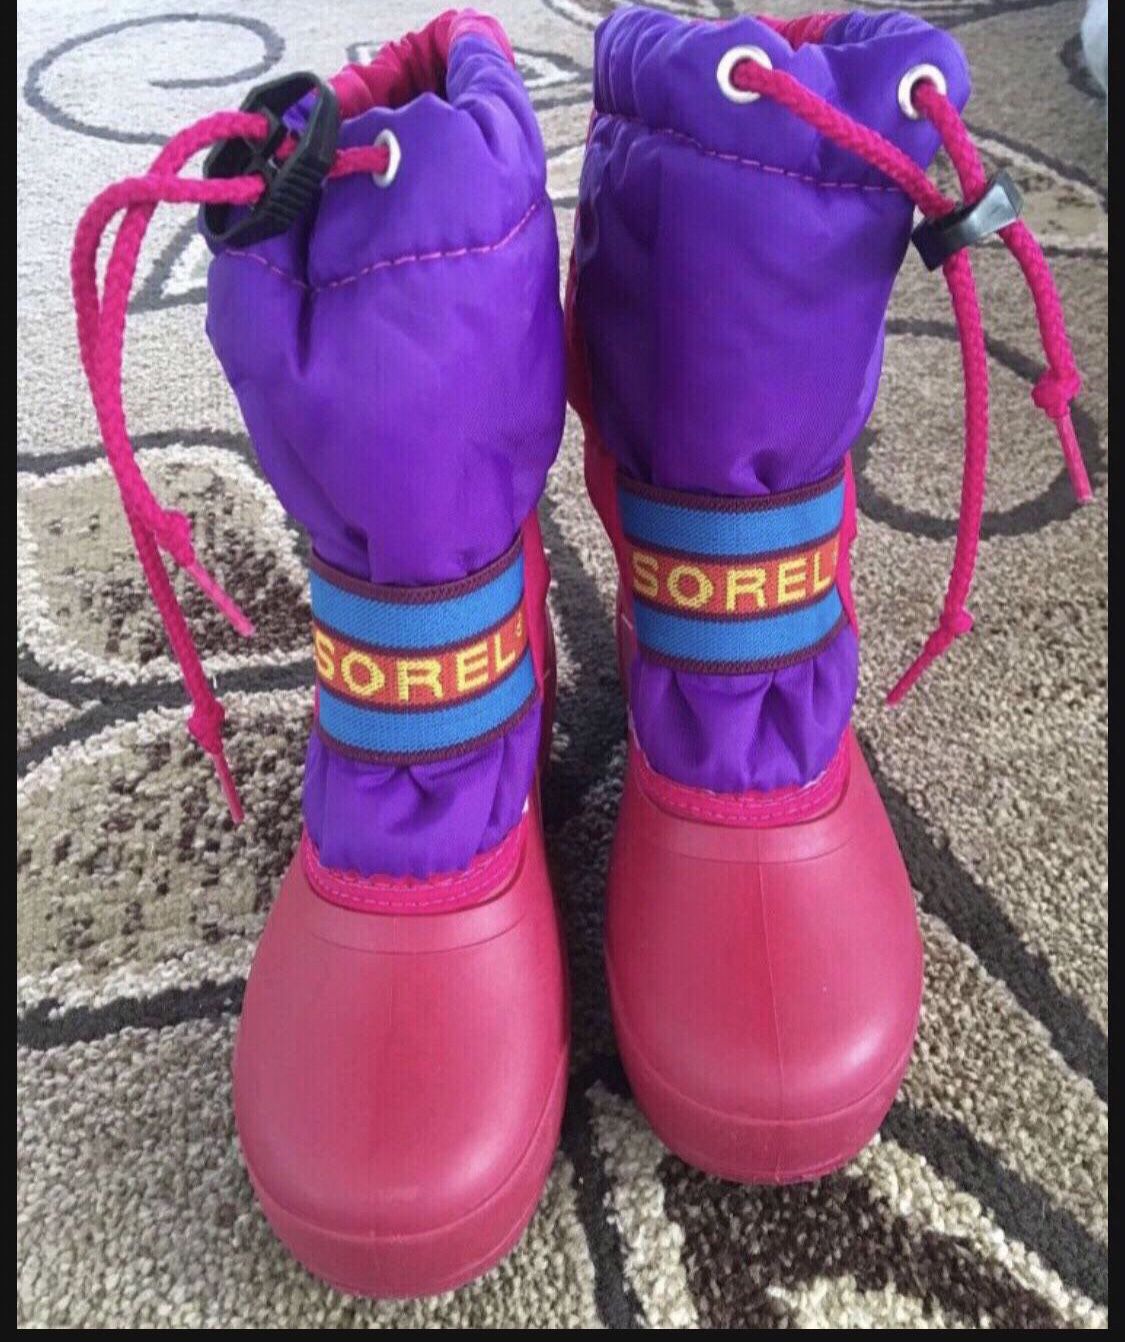 Sorel Waterproof Boots In Size 12